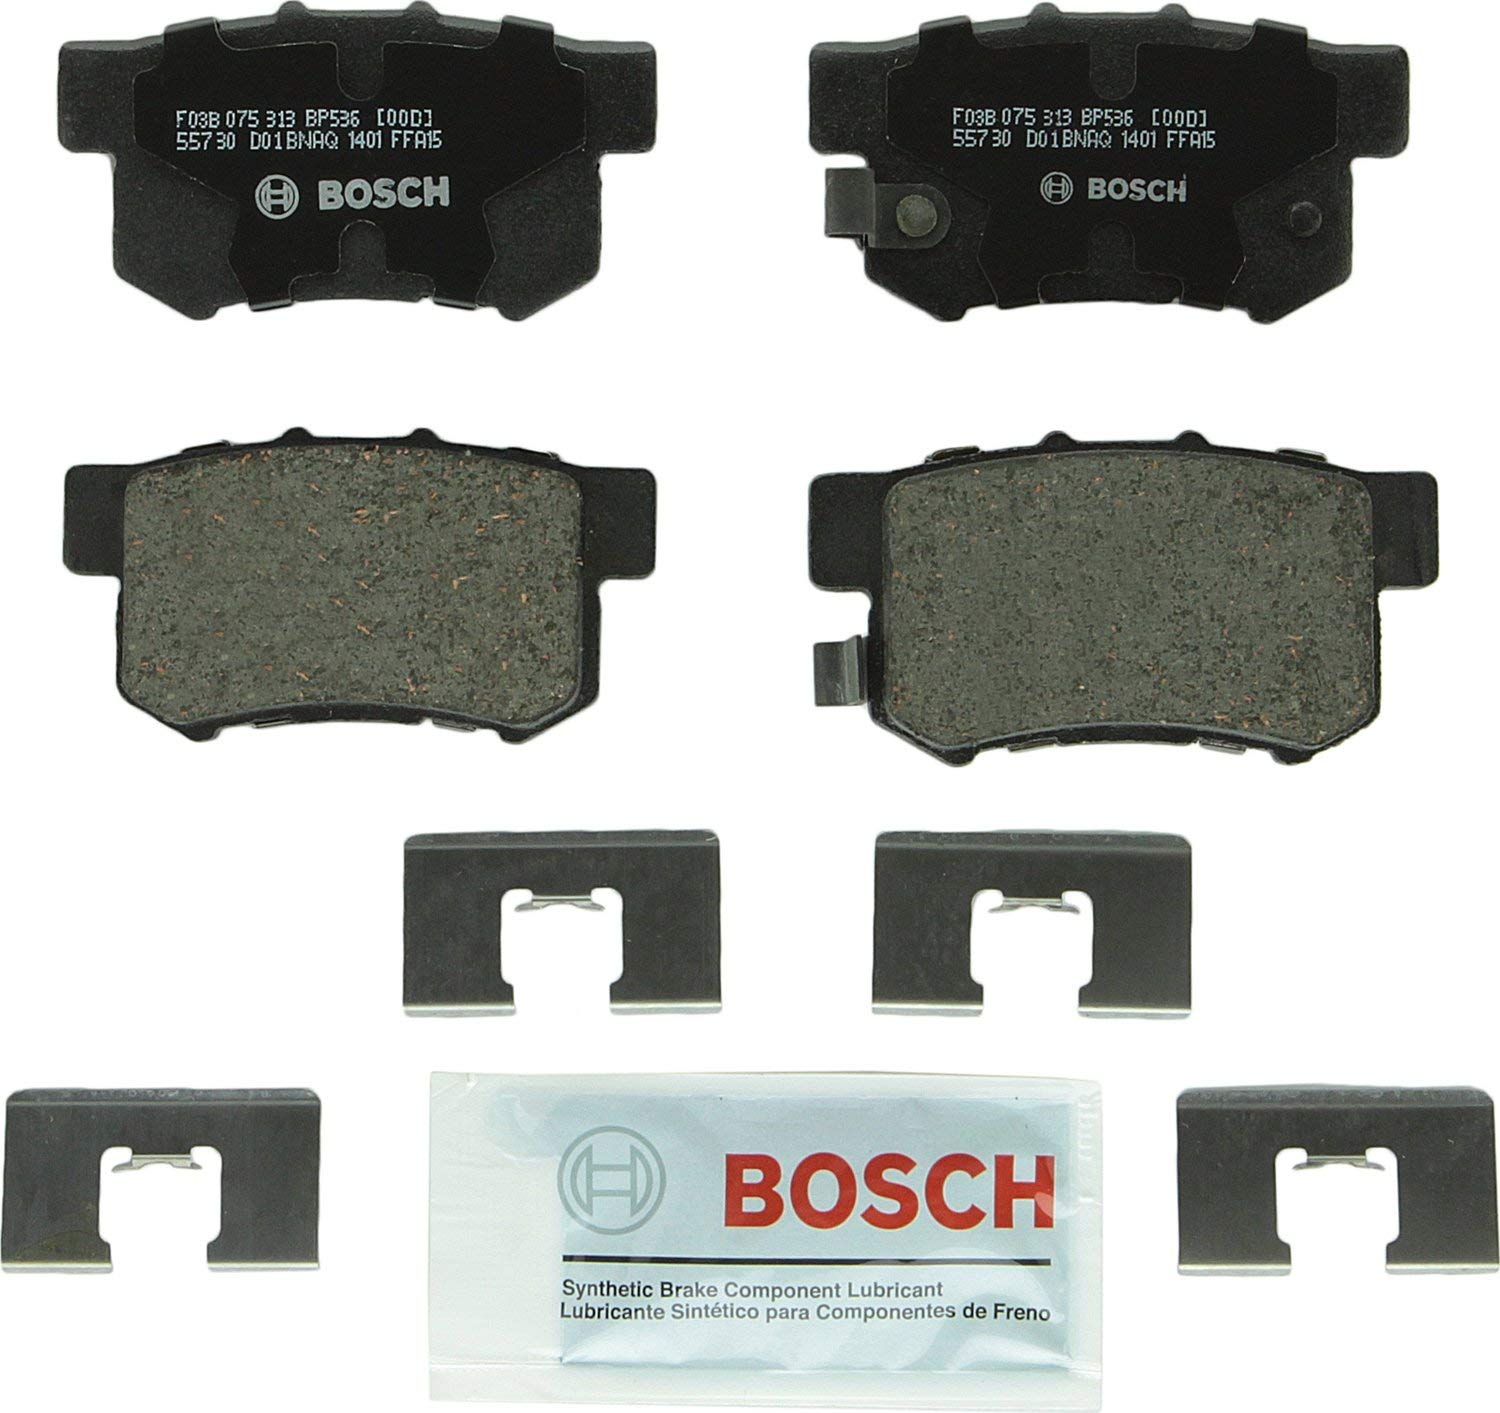 Bosch BP536 QuietCast Premium Disc Brake Pad Set For: Acura CL, EL, Integra, Legend, RL, TL, RDX; Honda CR-V, Element, Odyssey; Isuzu Oasis, Rear